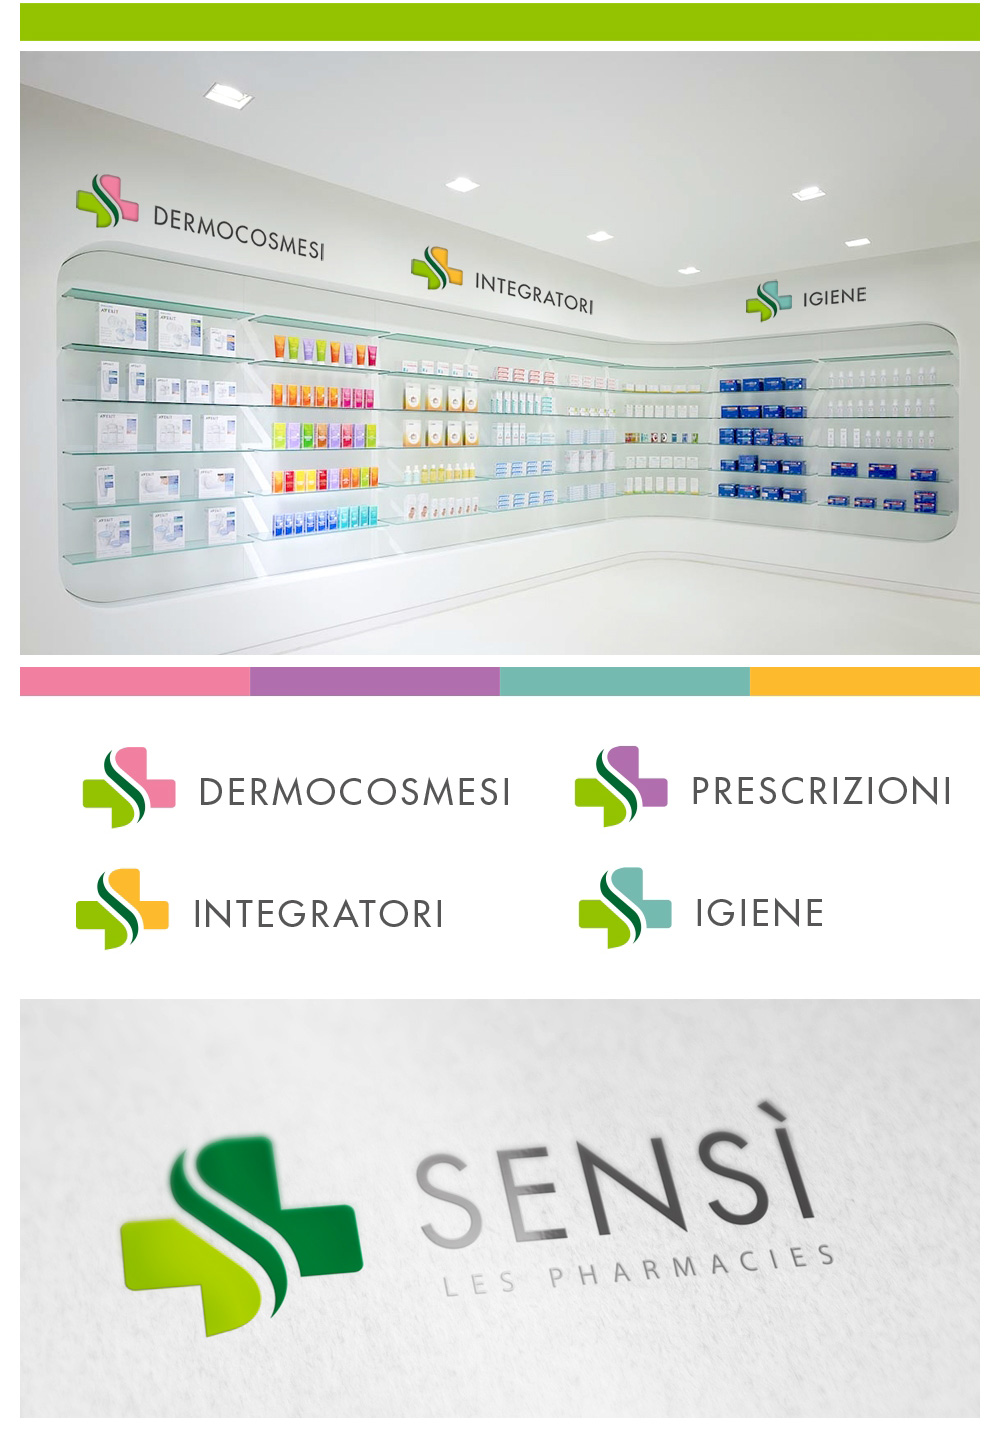 sensi_farmacia_logo_02.jpg